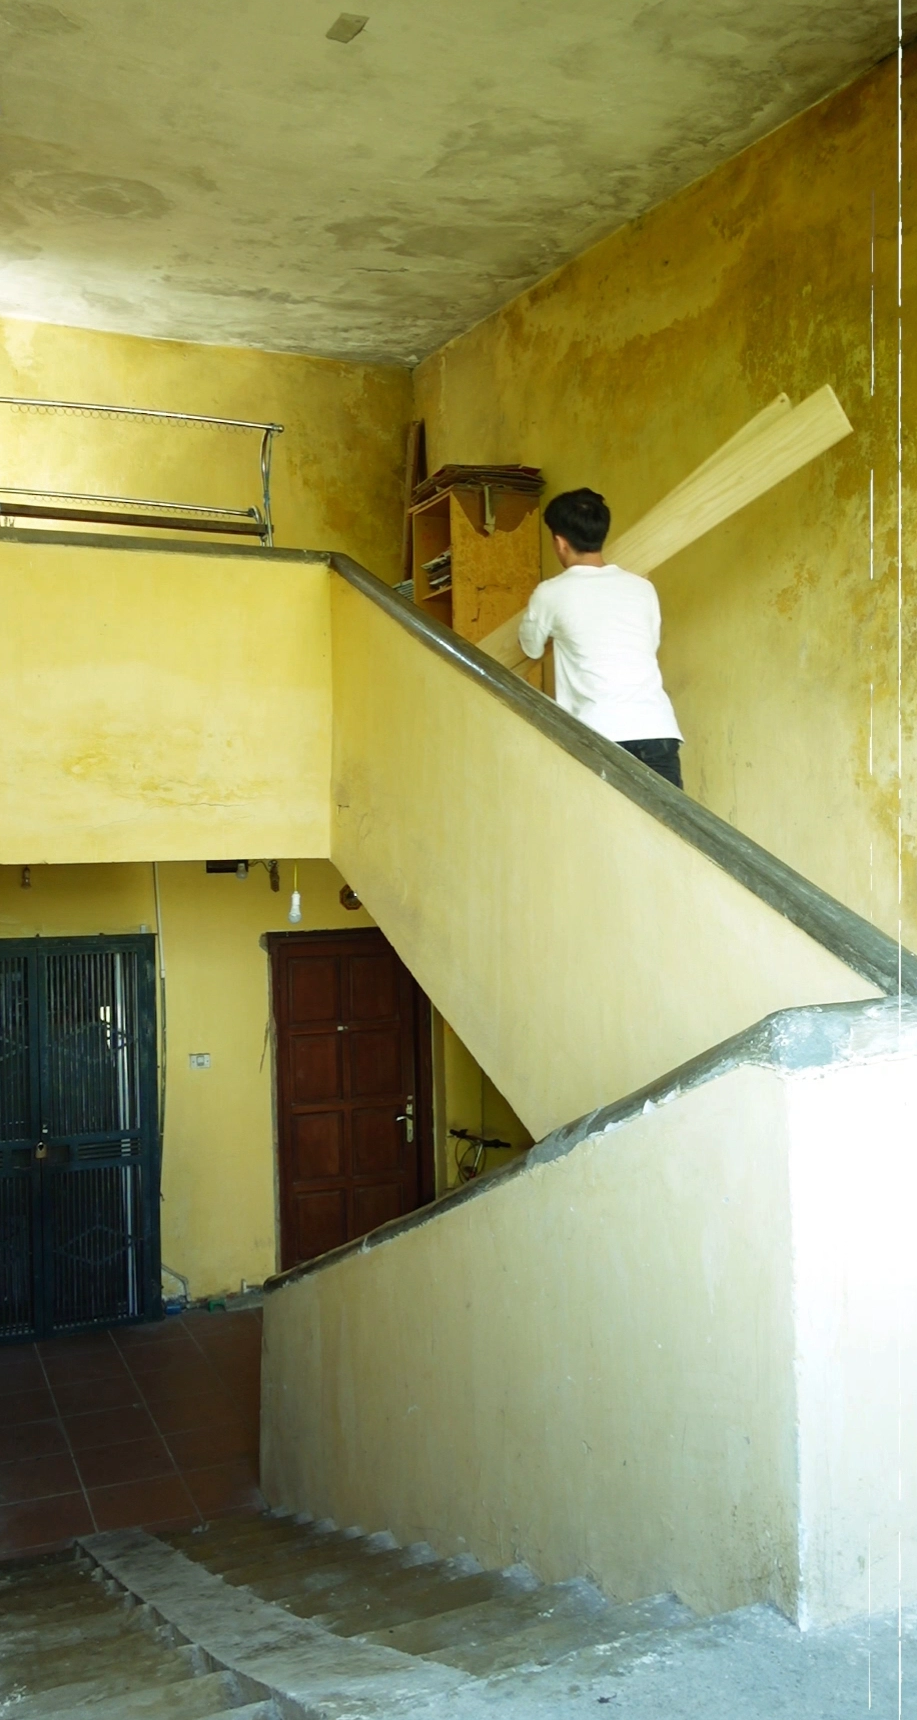 Chàng trai Hà Nội kể chuyện bỏ nhà, bỏ việc sửa "penthouse": Dự tính khoảng 10 triệu, chọn tự tay làm hết để tiết kiệm chi phí